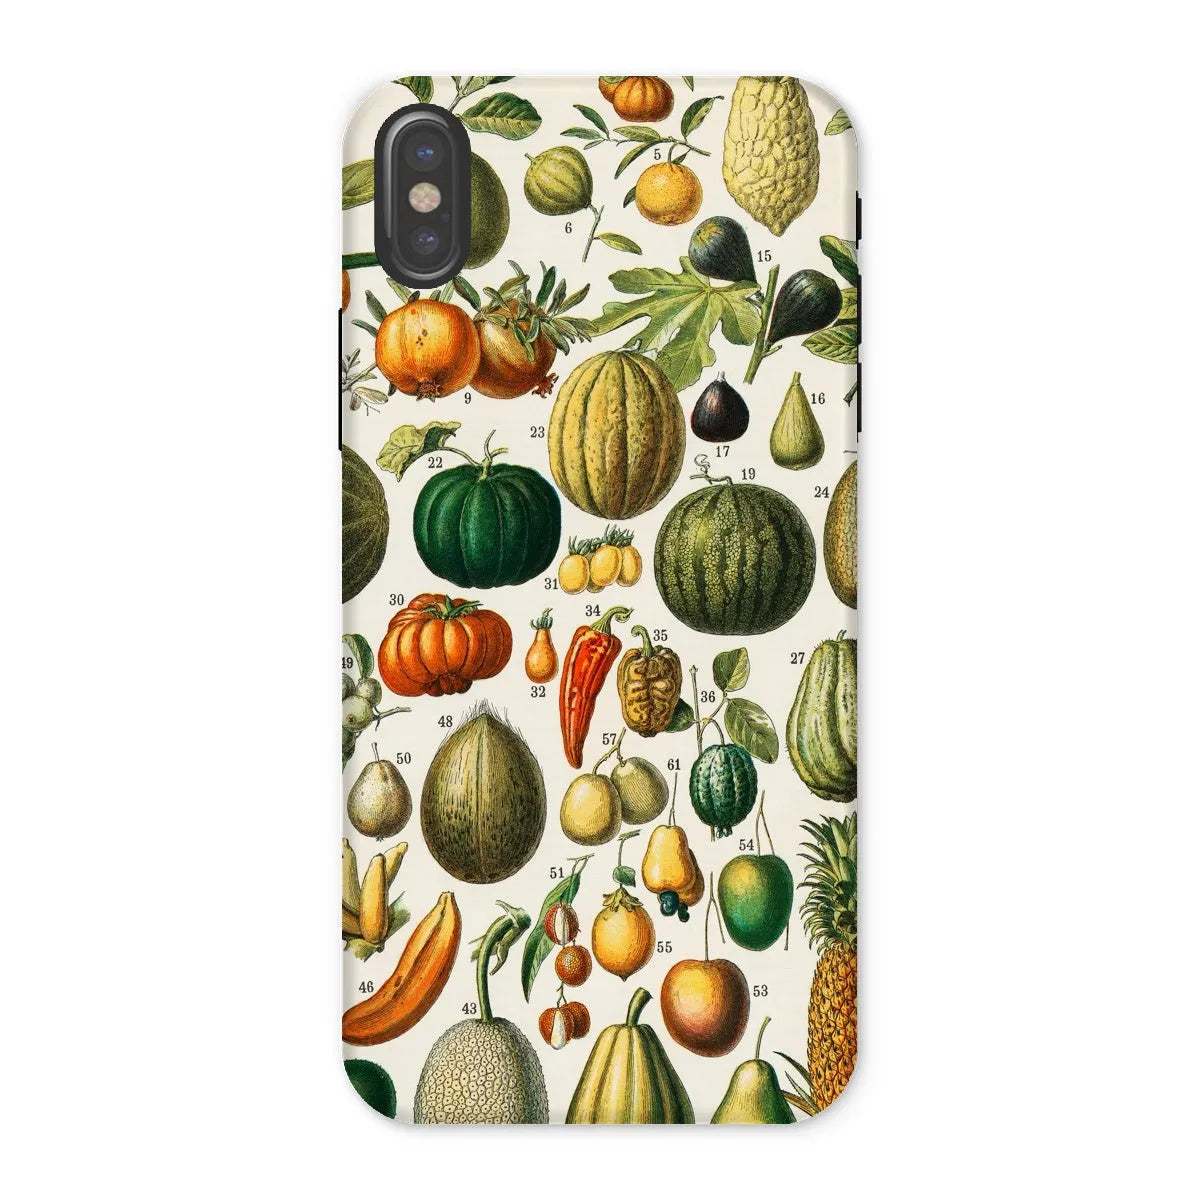 Fruits And Vegetables Art Phone Case - Nouveau Larousse Illustre - Iphone x / Matte - Mobile Phone Cases - Aesthetic Art